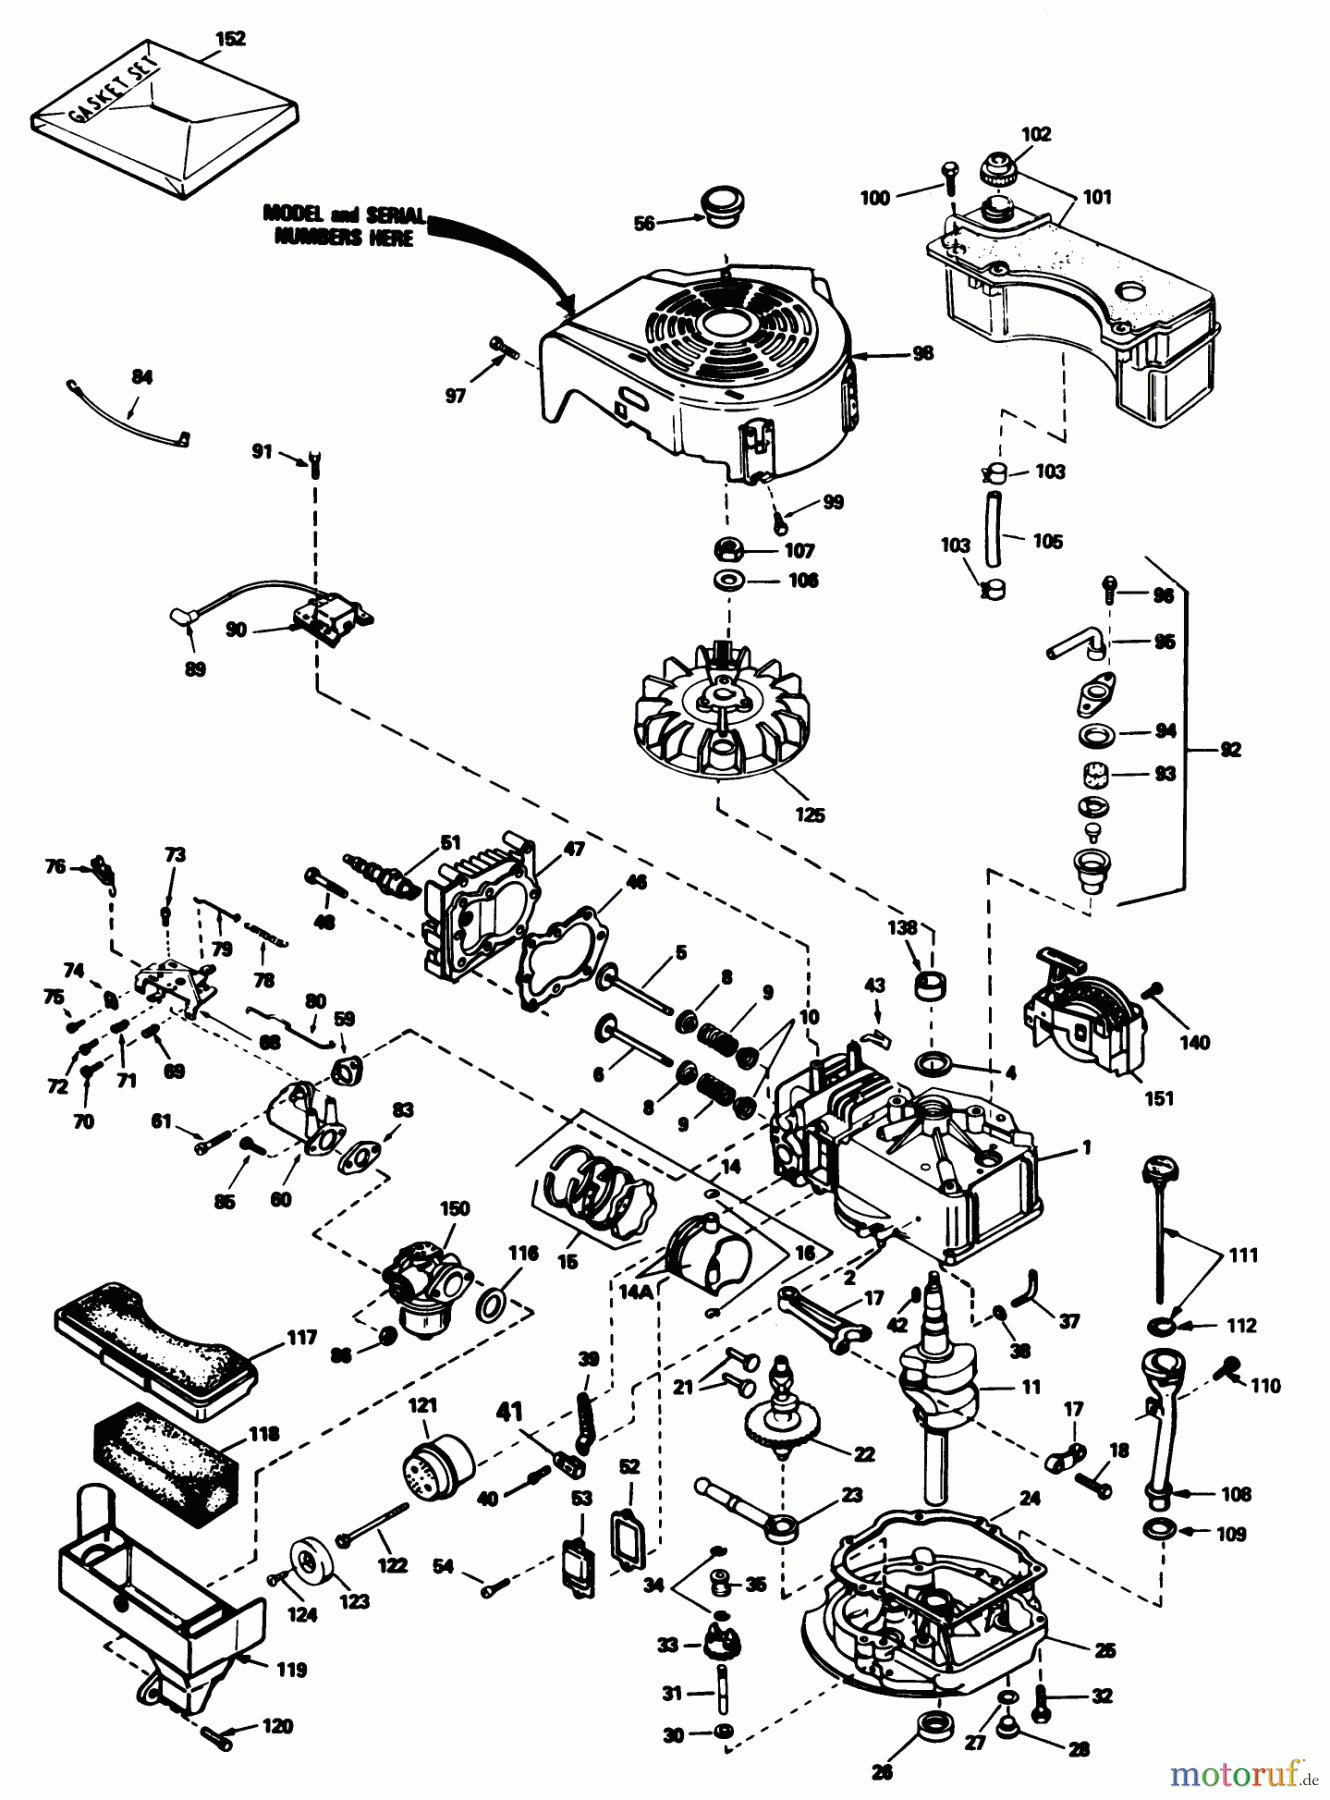  Toro Neu Mowers, Walk-Behind Seite 1 16340C - Toro Lawnmower, 1985 (5000001-5999999) ENGINE TECUMSEH MODEL NO. TVS90-43327D